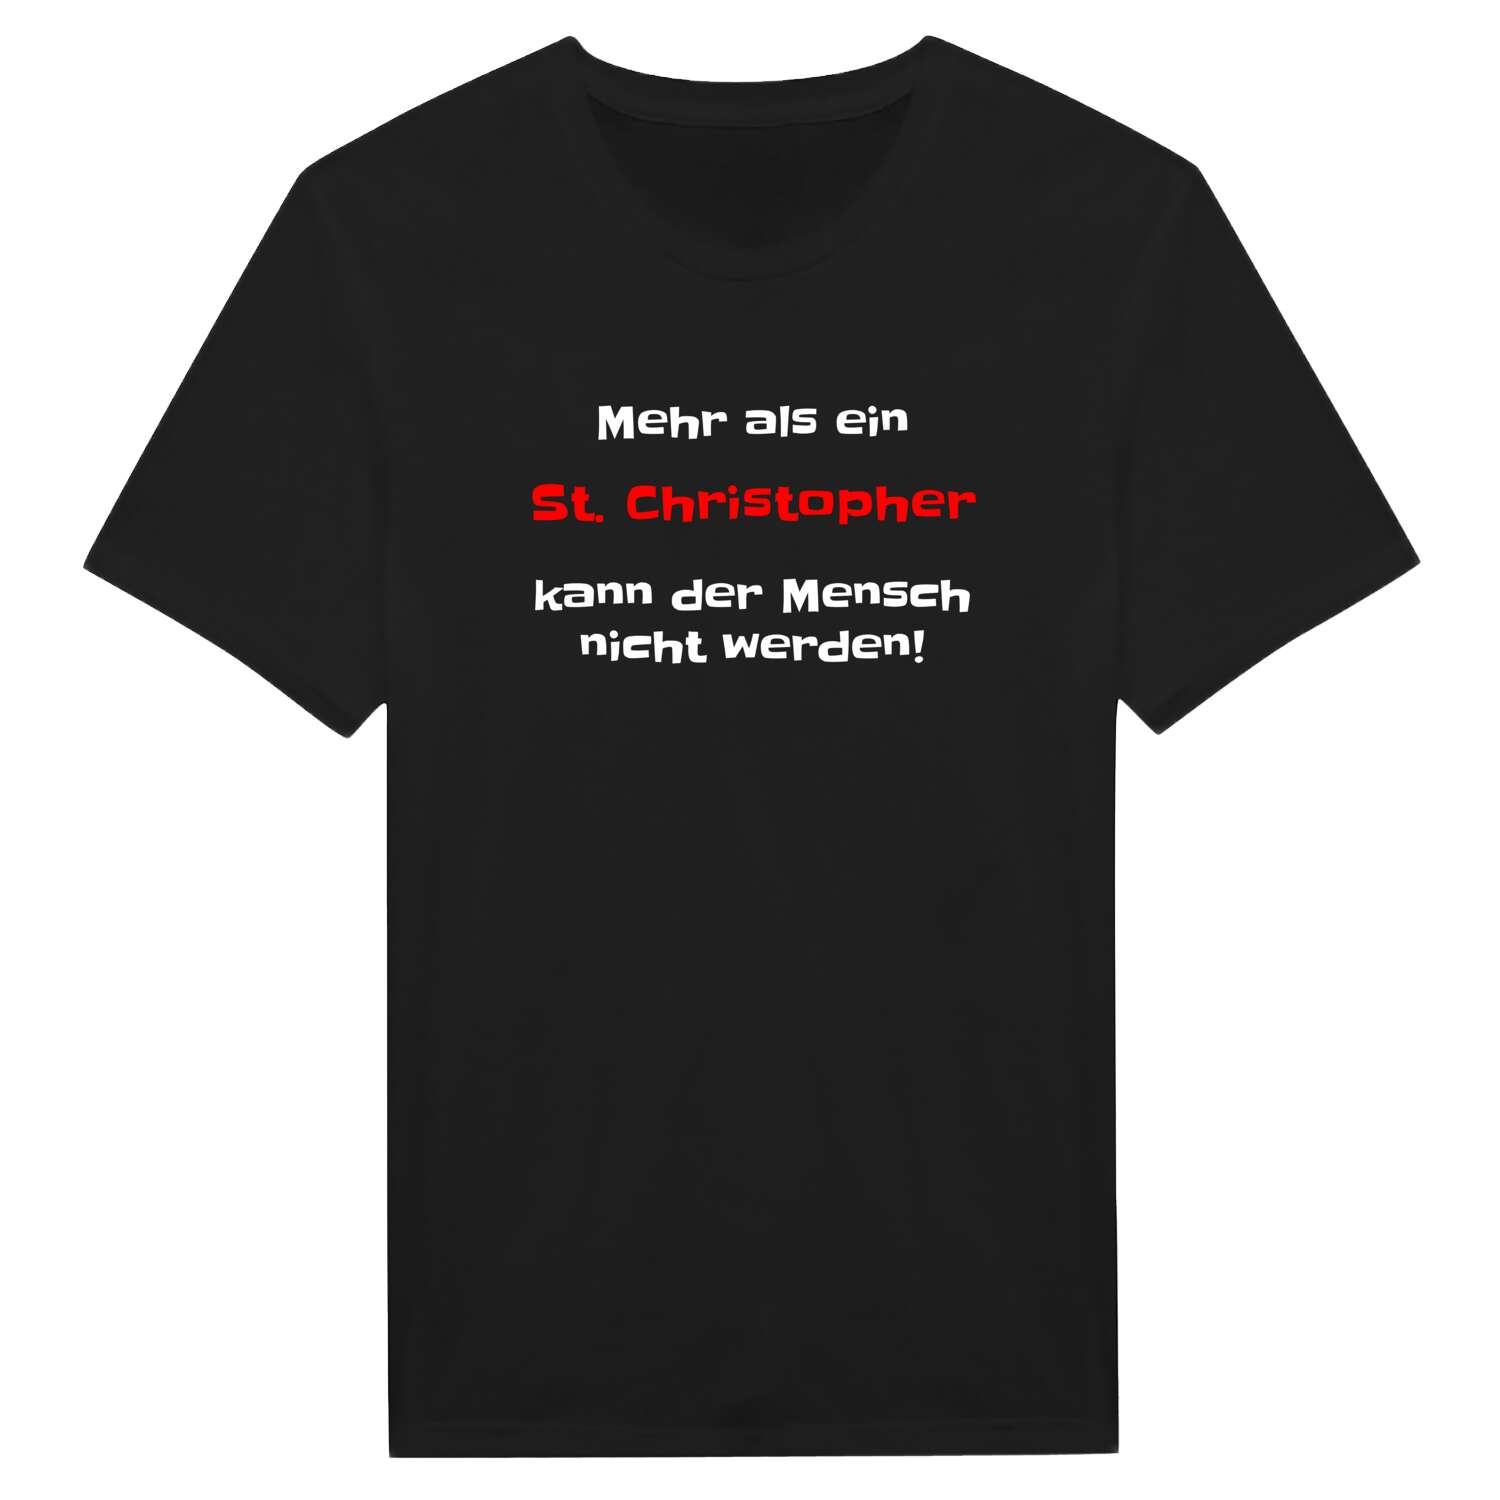 St. Christoph T-Shirt »Mehr als ein«